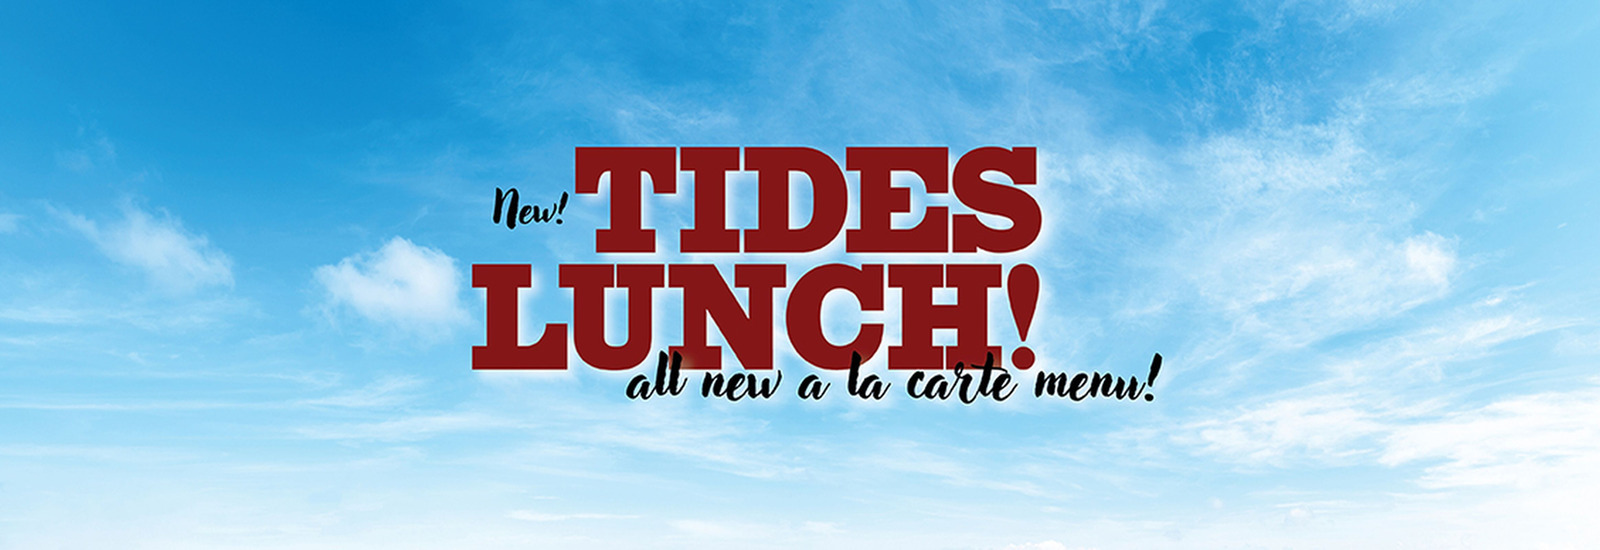 New Tides Lunch All New A la carte Menu